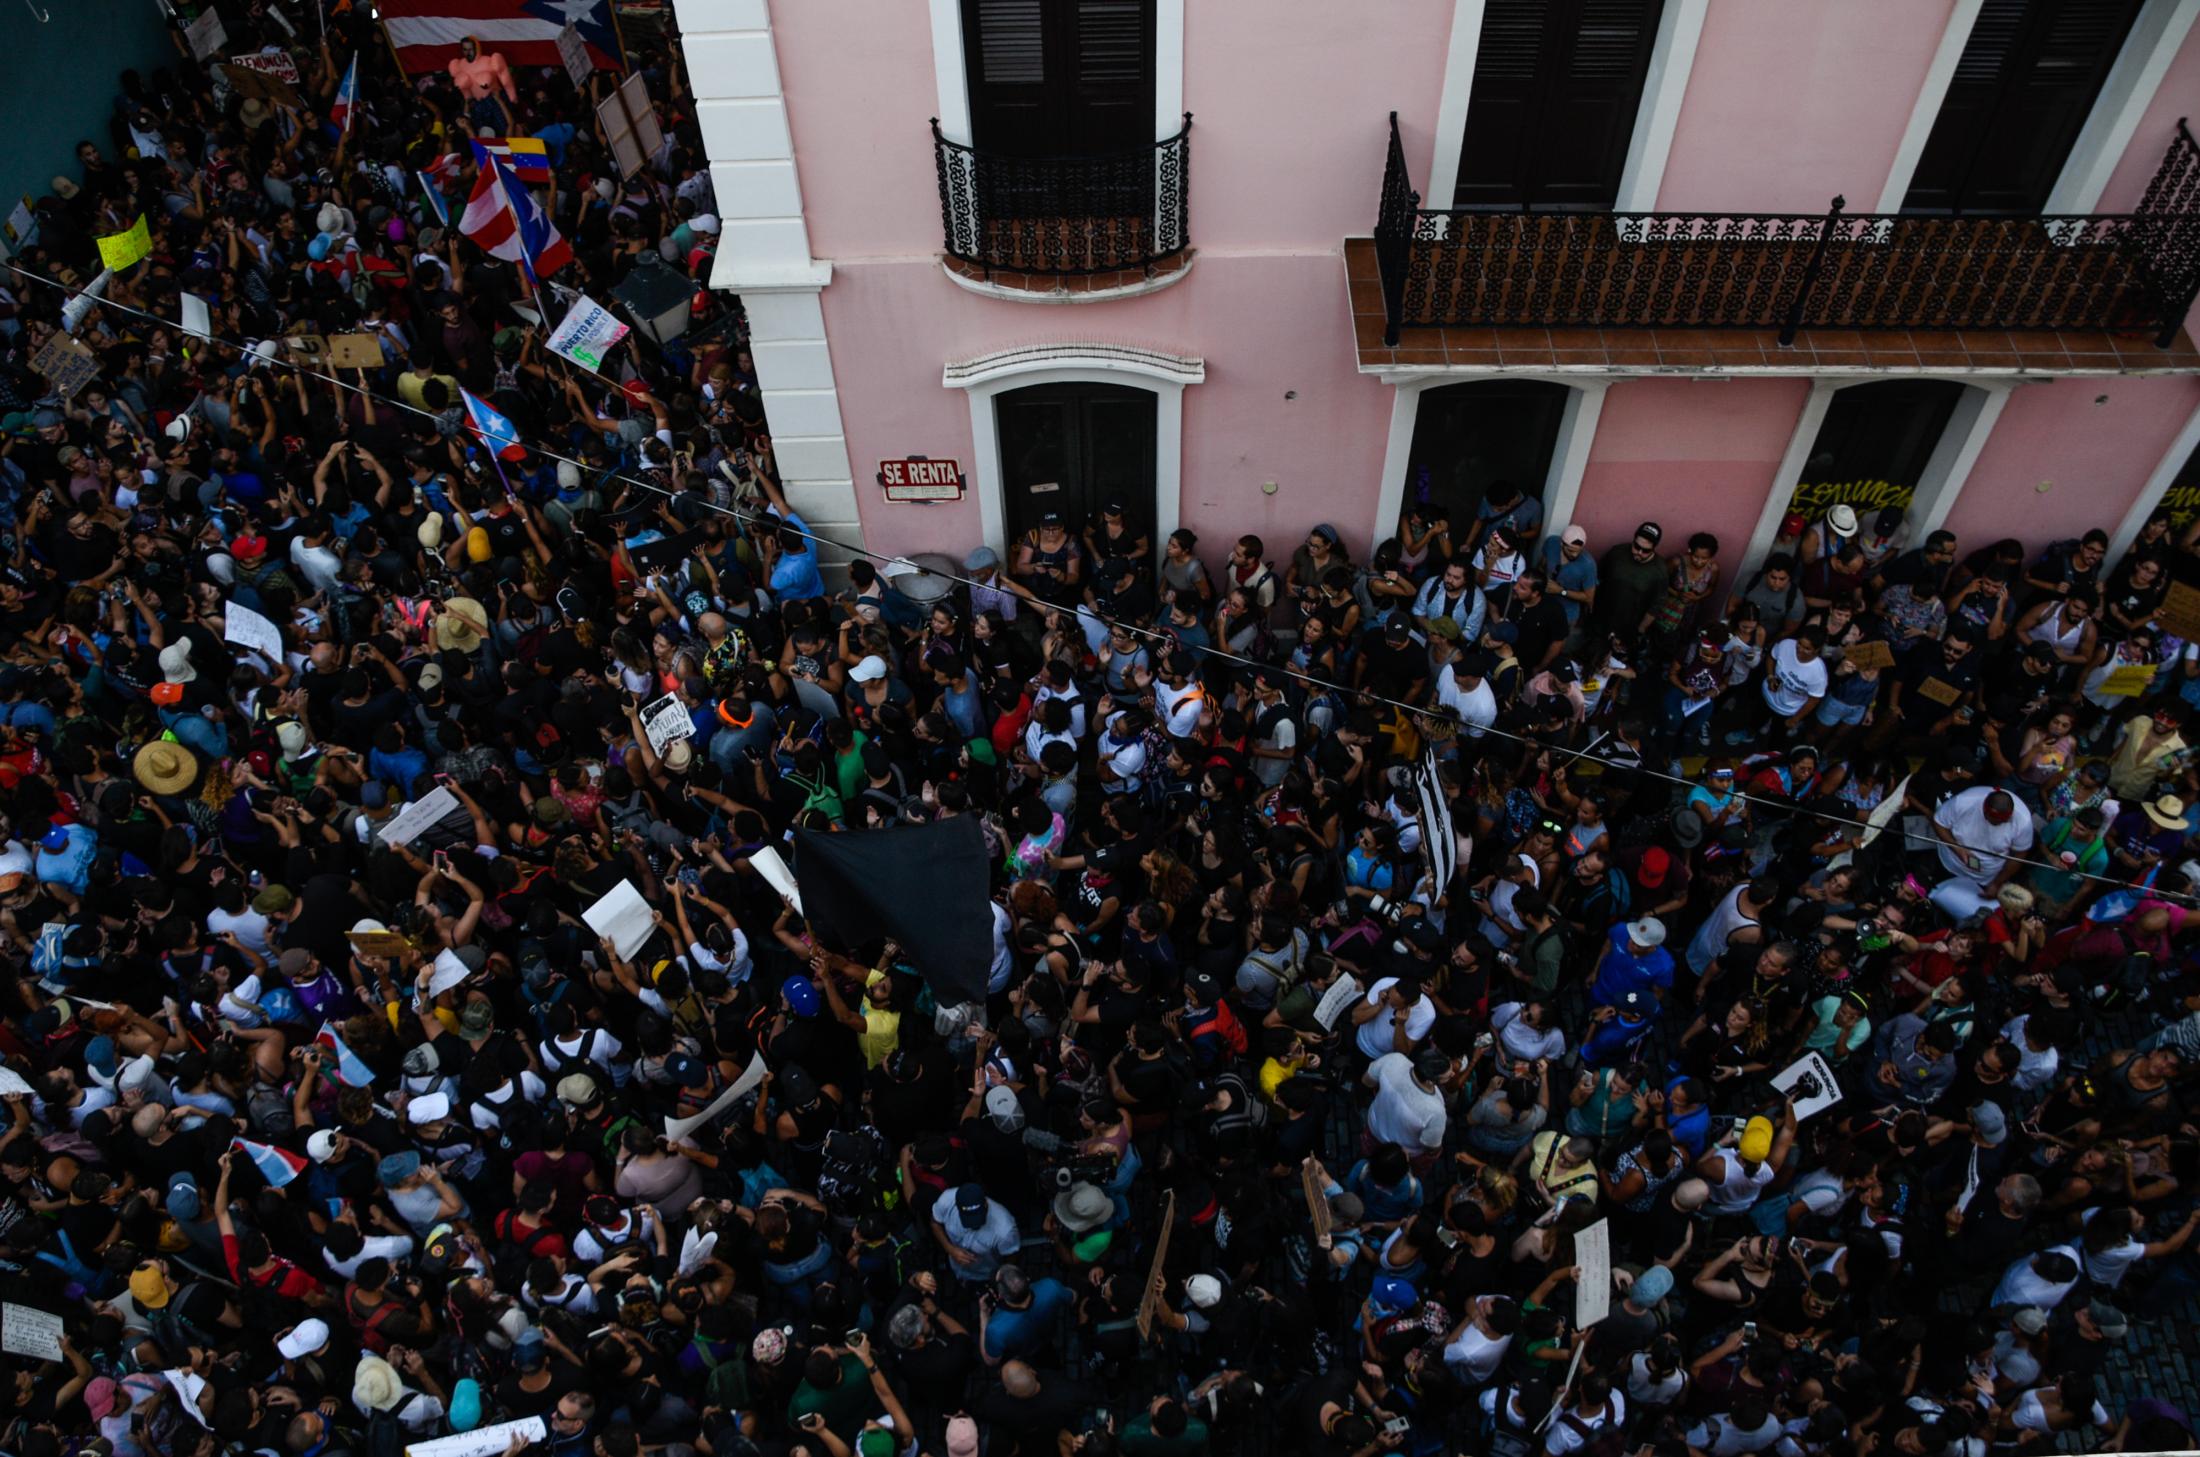 #RickyRenuncia - Protest at the Fortaleza.